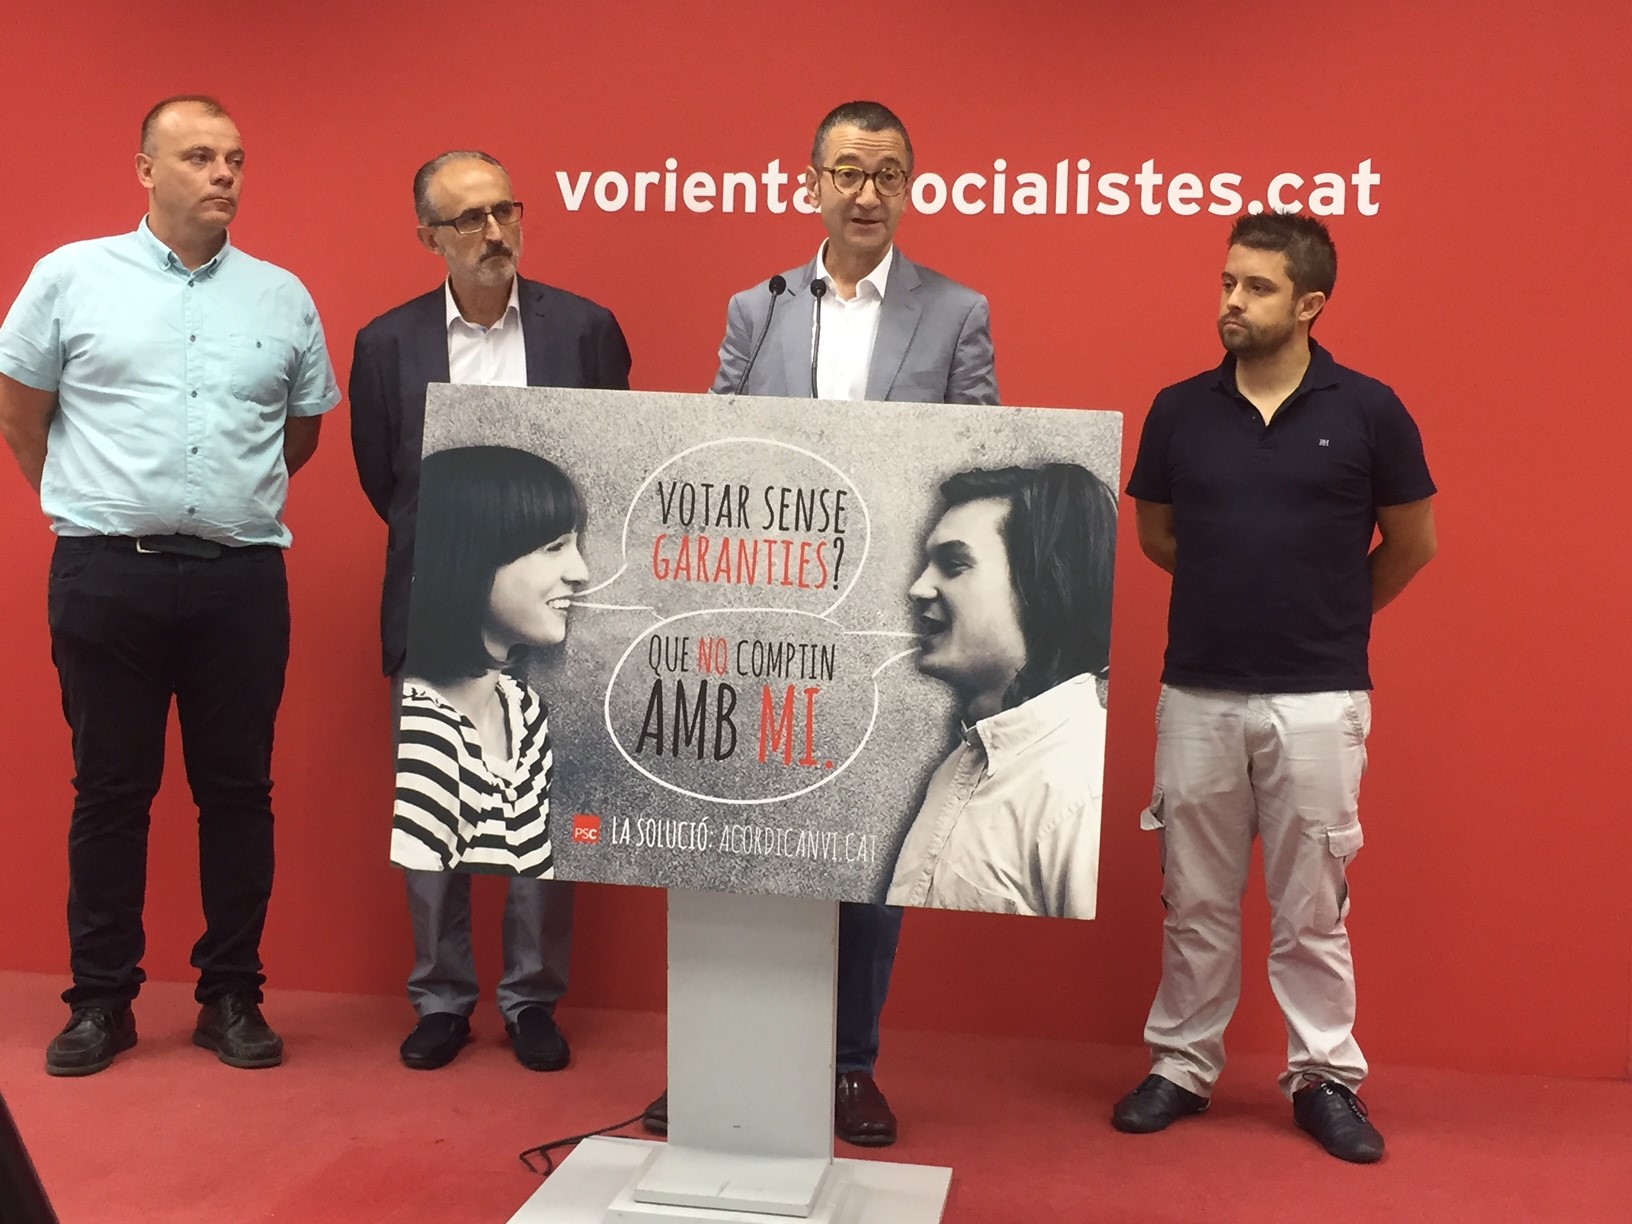 Jordi Terrades intervé en la presentació, amb els alcaldes Emilio Cordero i Josep Monràs a l'esquerra, i el primer secretari comarcal, Jonatan Martínez, a la dreta